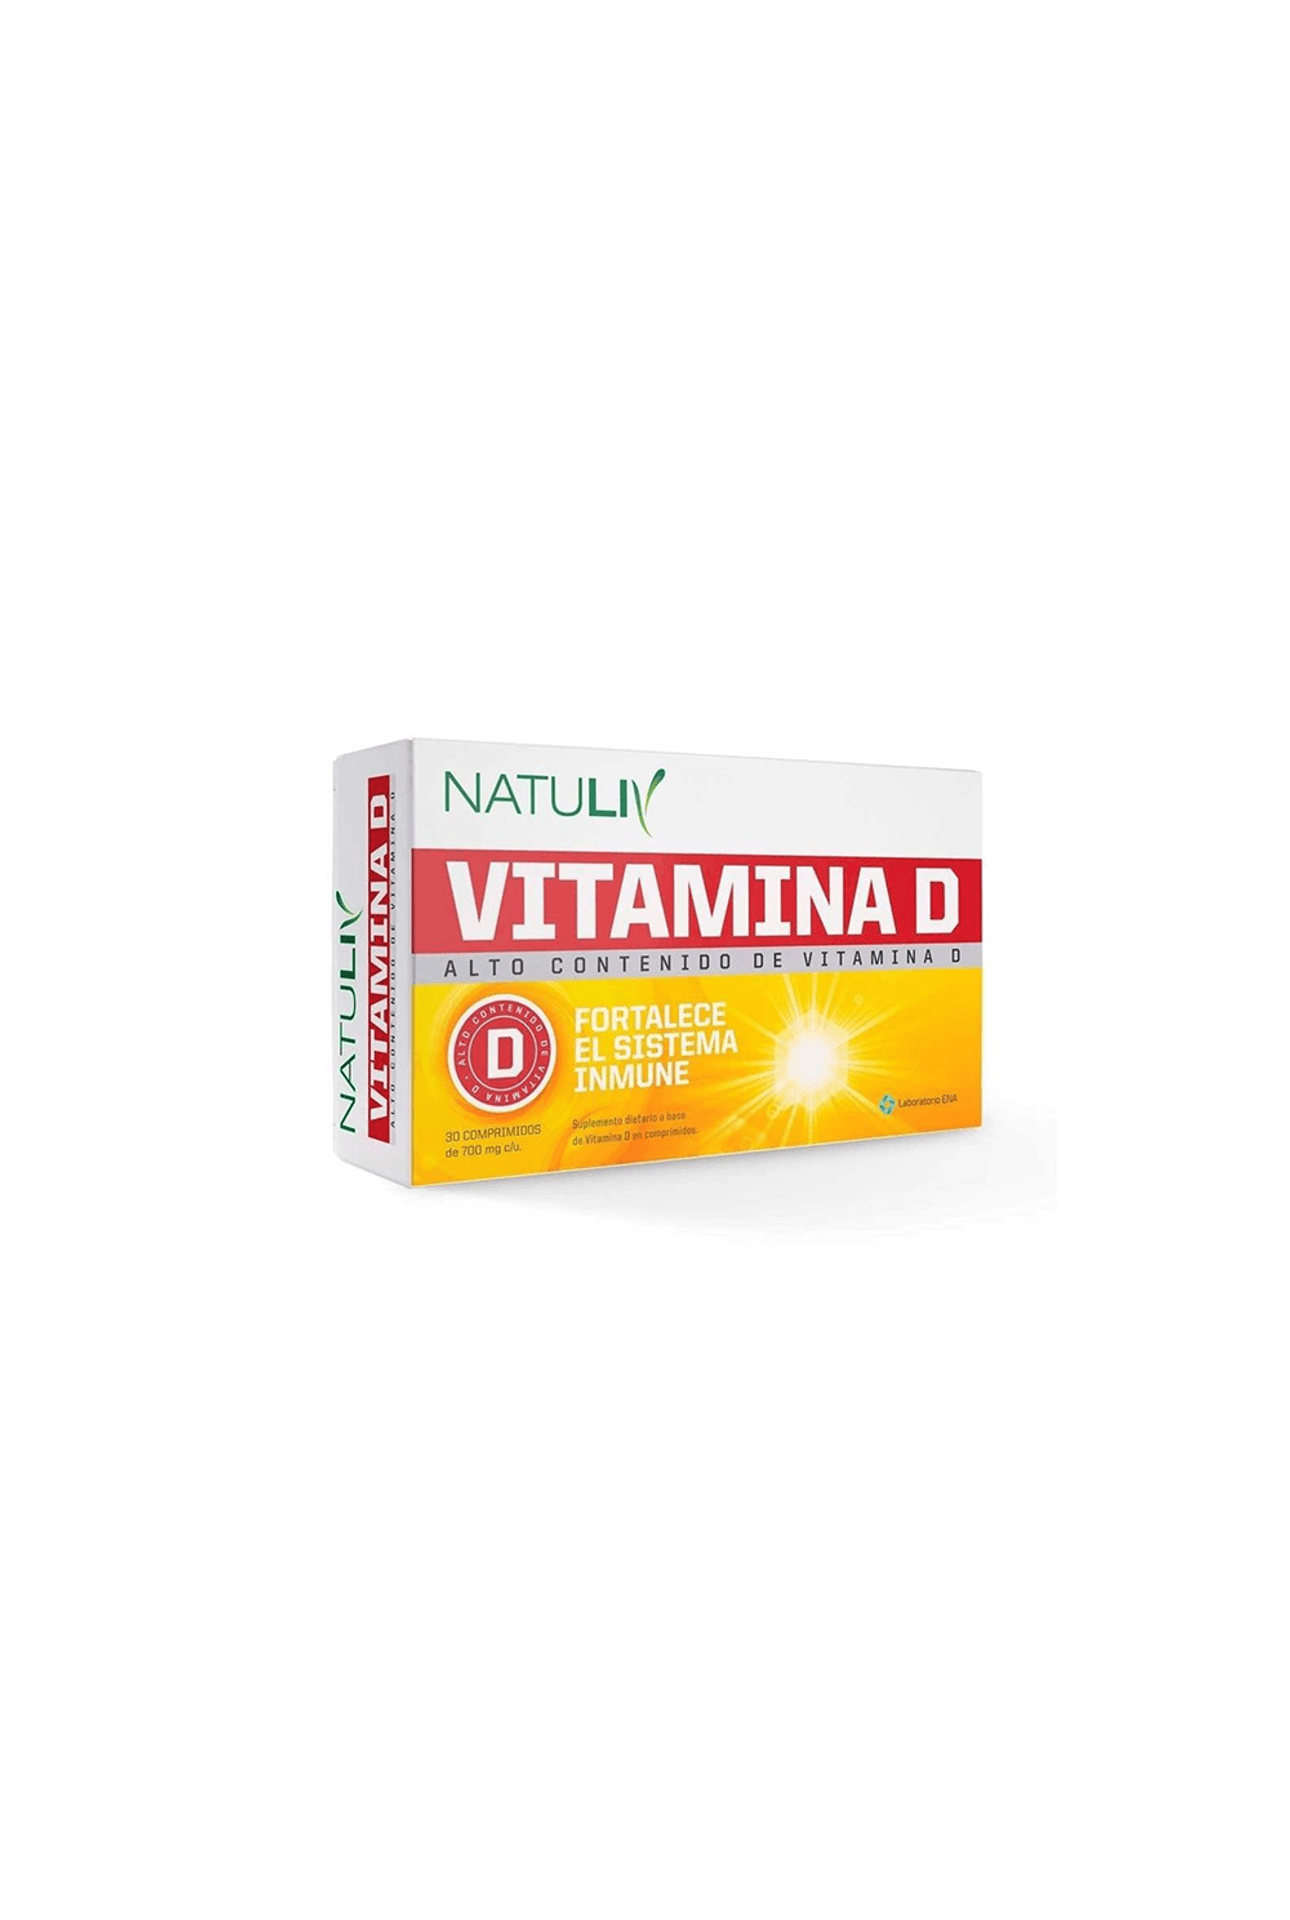 57981_Natuliv-Vitamina-D-x-30_img1